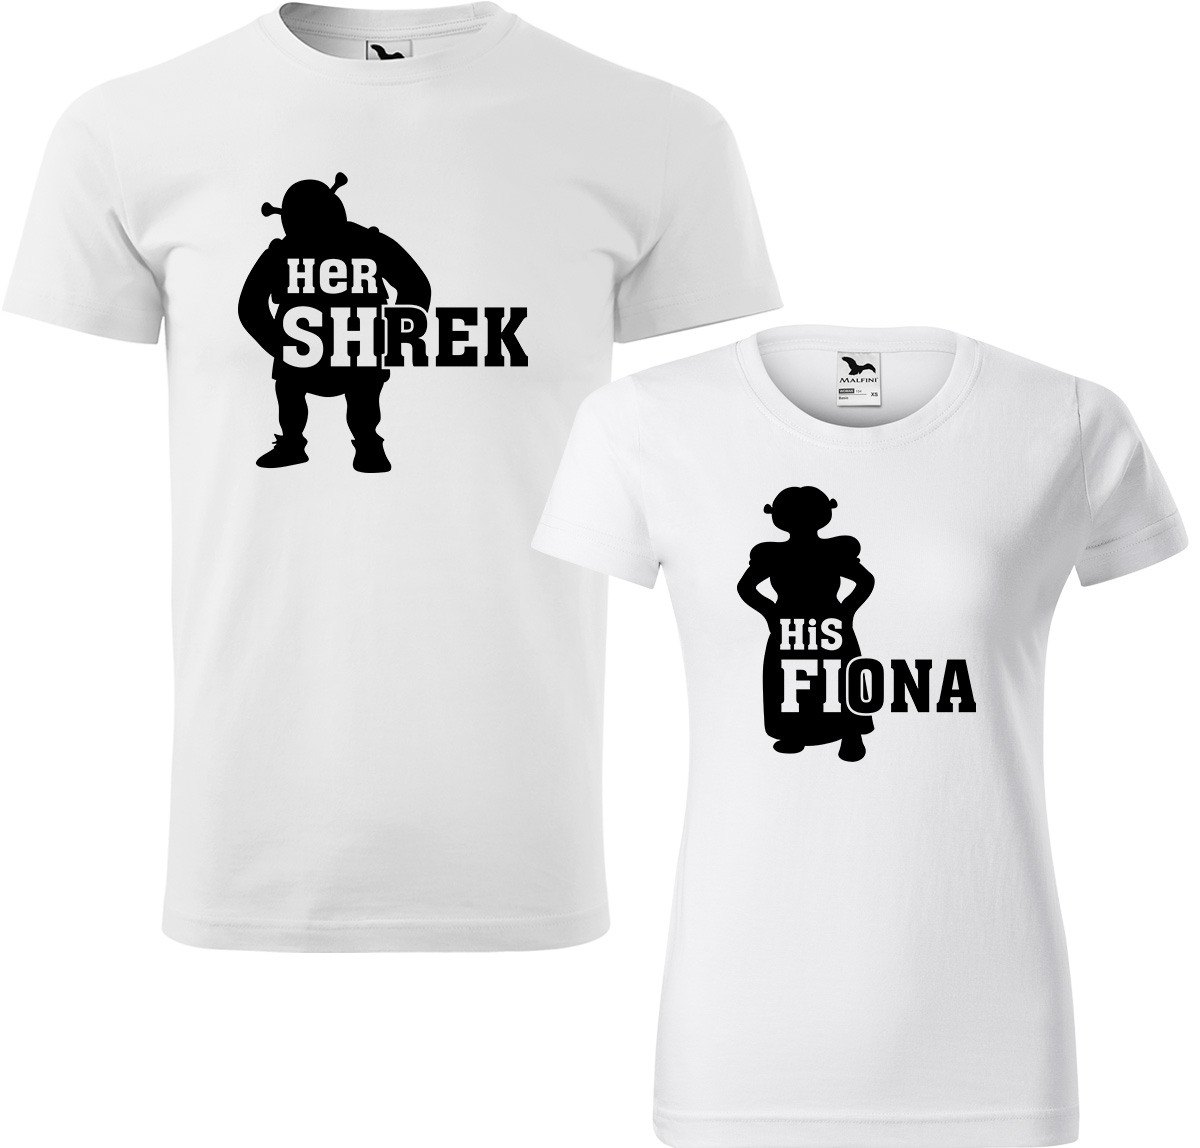 Trička pro páry - Shrek a Fiona Barva: Bílá (00), Velikost dámské tričko: 2XL, Velikost pánské tričko: 2XL